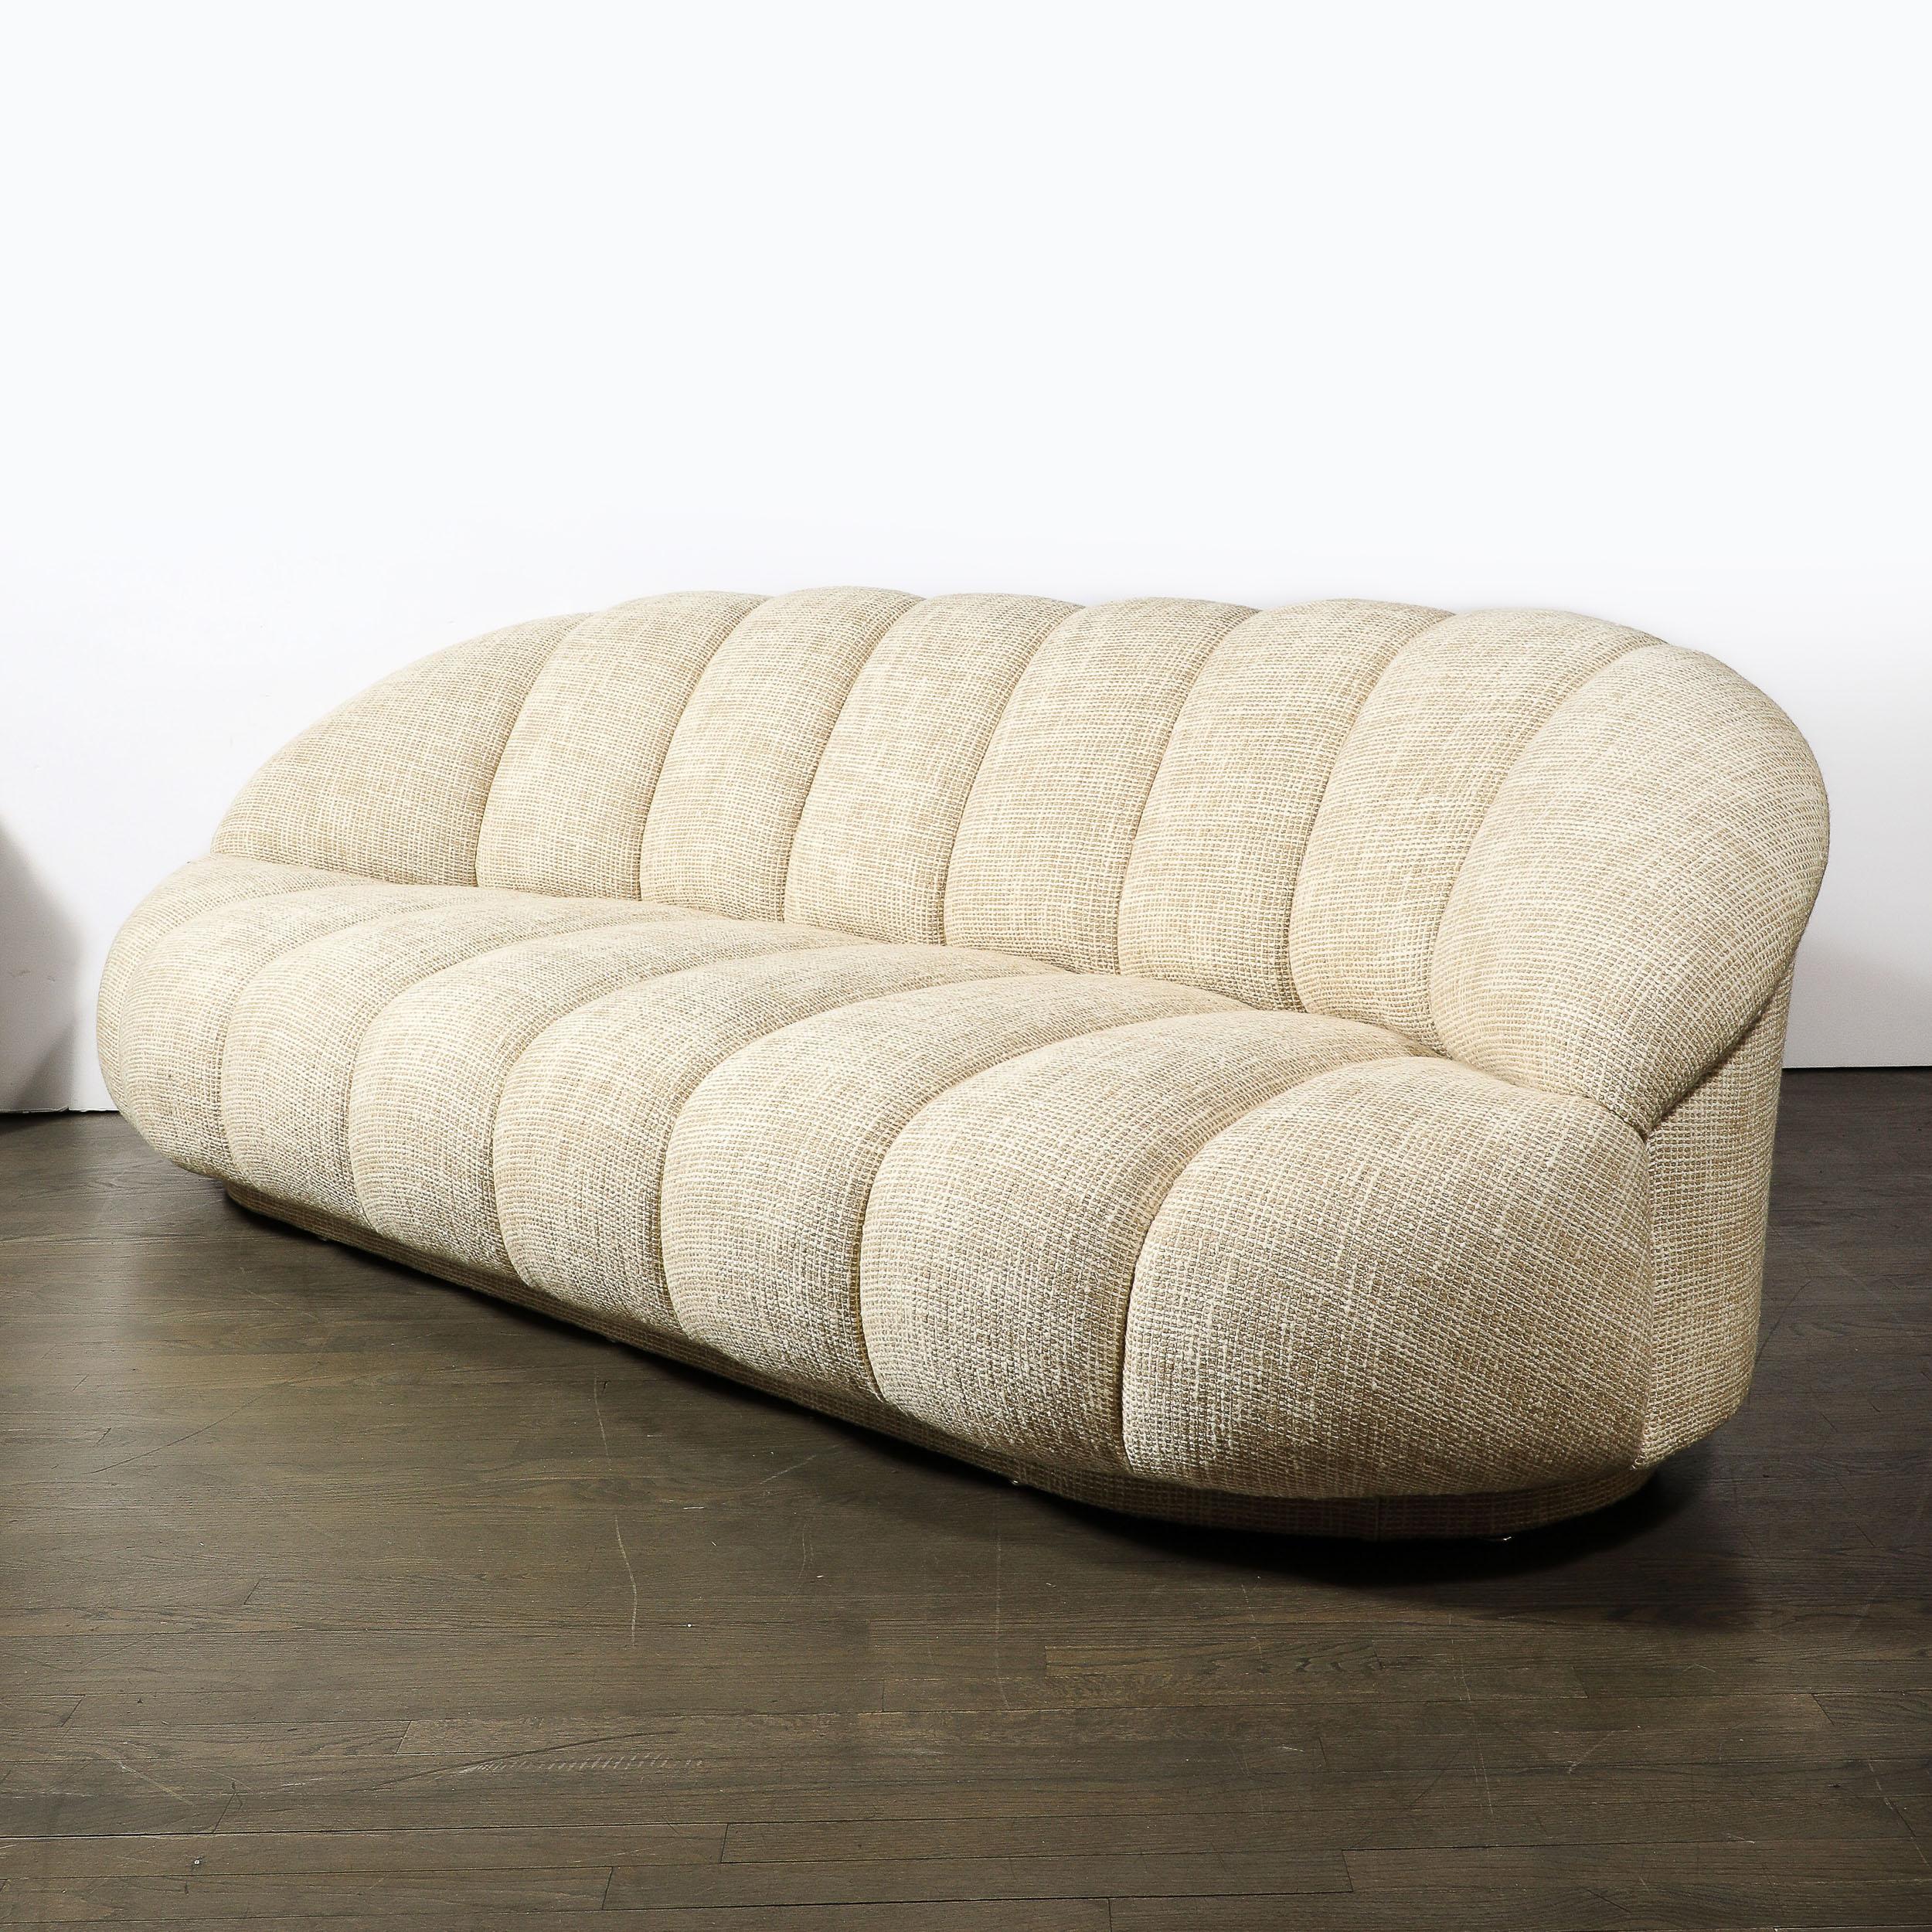 Dieses schlichte, verspielte und schön proportionierte Mid-Century Modernist Channel Form Cloud Sofa in HOLLY HUNT Fabric ist von der geschätzten Möbelfirma A. Rudin und stammt aus den Vereinigten Staaten, CIRCA 1980. Eine abgerundete Form mit